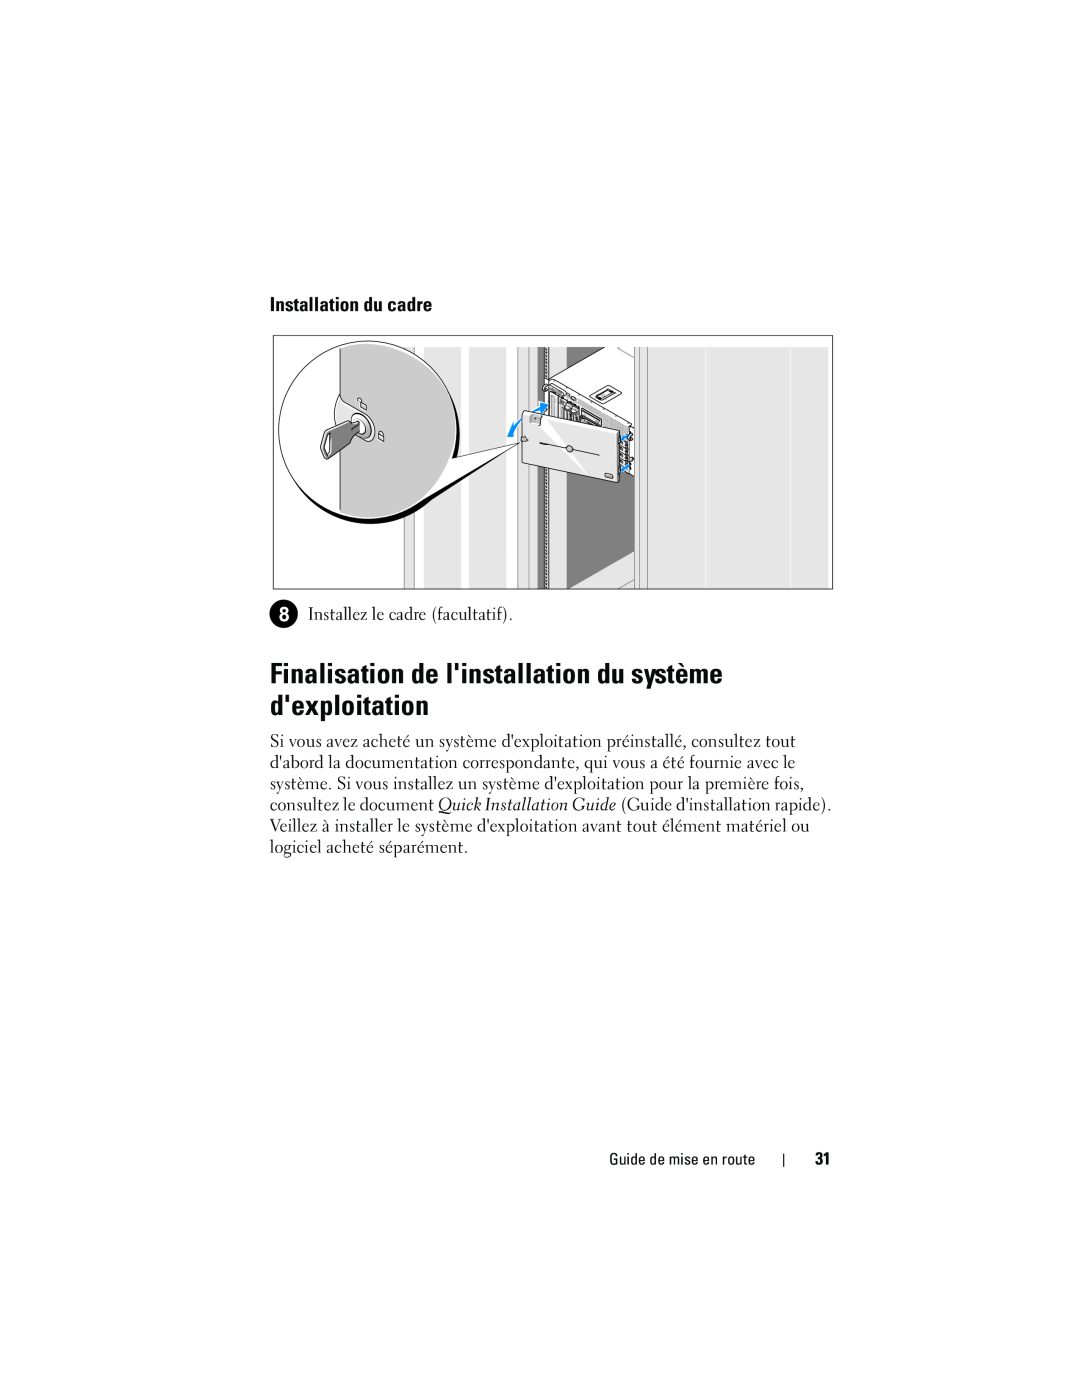 Dell CX193 manual Finalisation de linstallation du système dexploitation, Installation du cadre 